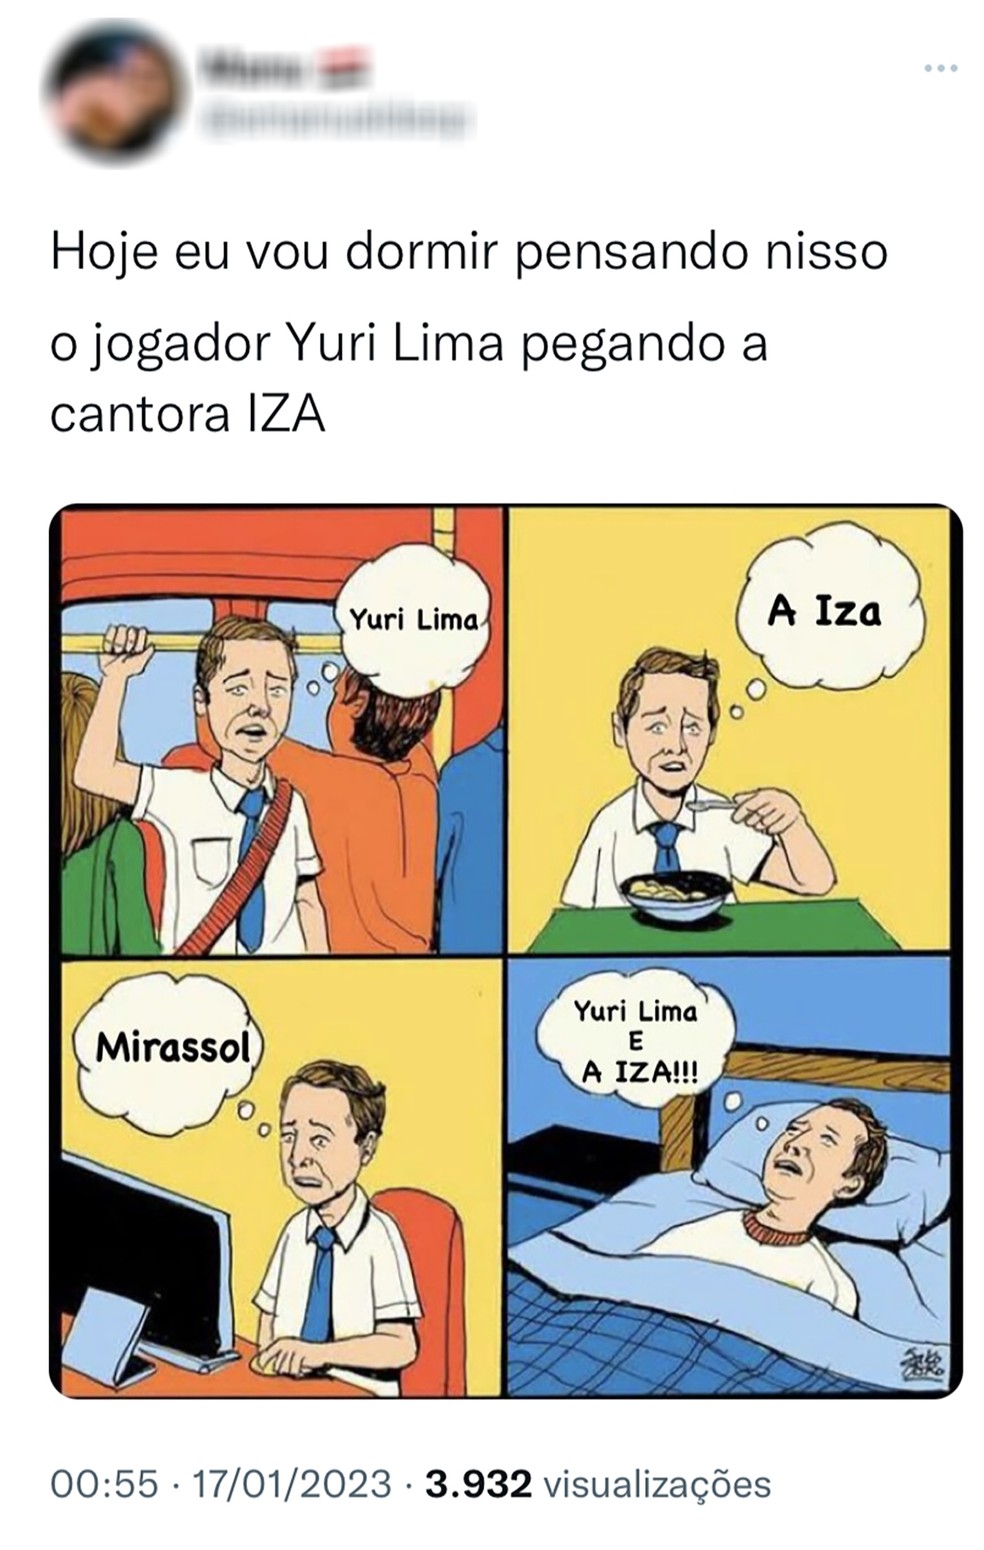 Anônimos fazem memes sobre suposto relacionamento entre IZA e Yuri Lima — Foto: Reprodução/Twitter